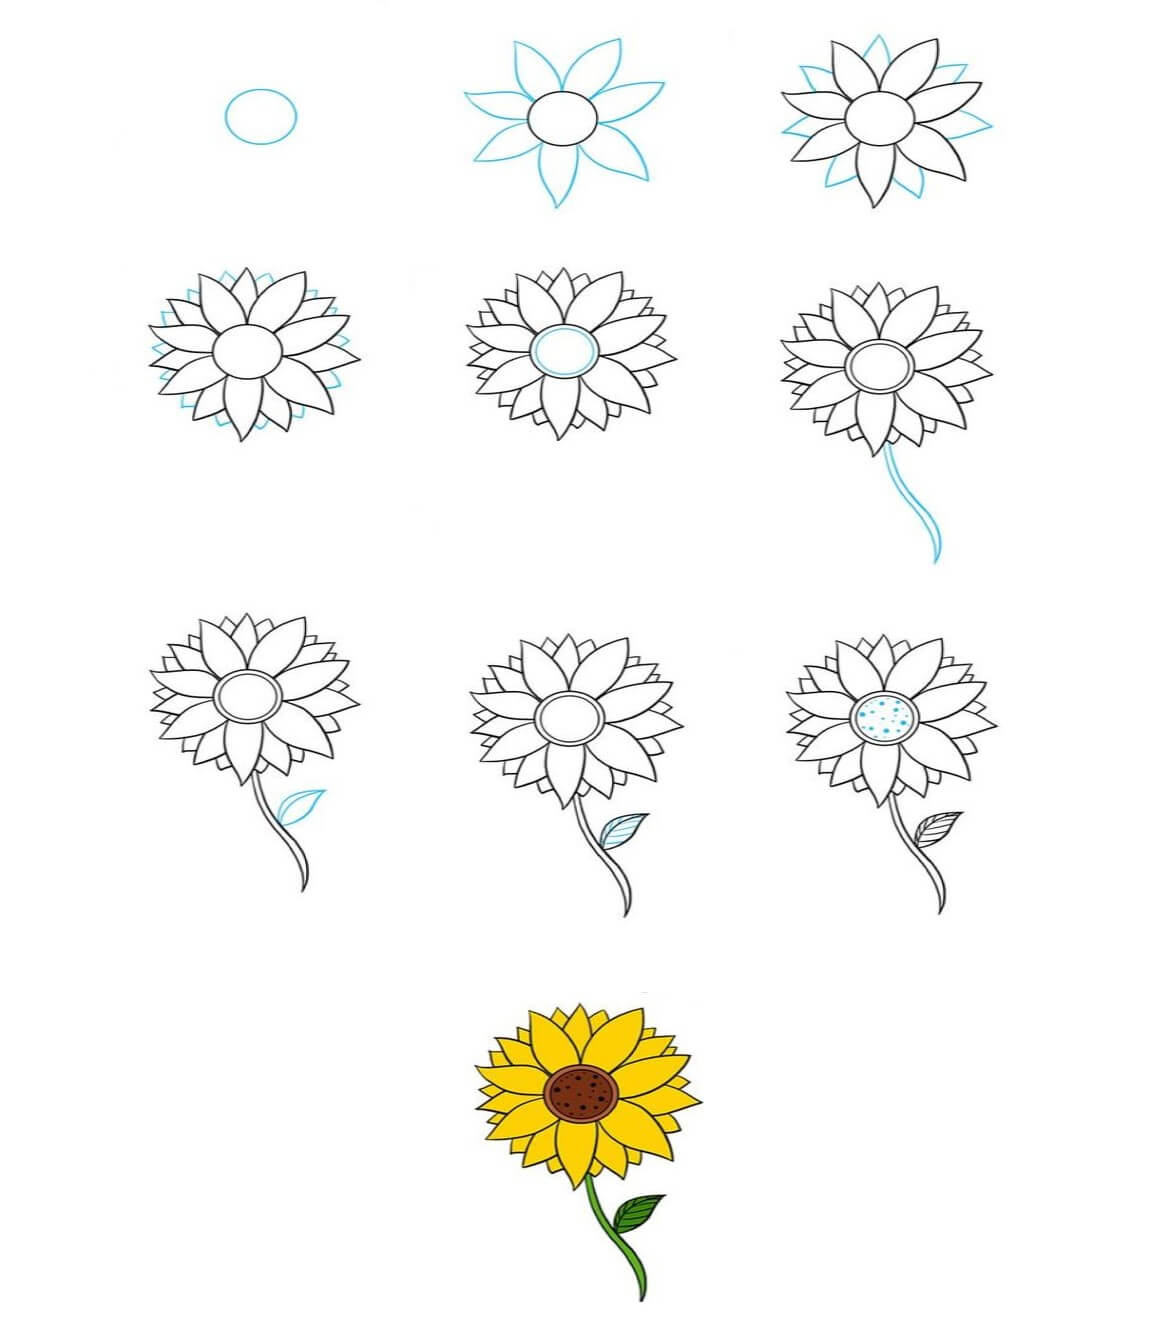 Idee mit Sonnenblumen (3) zeichnen ideen